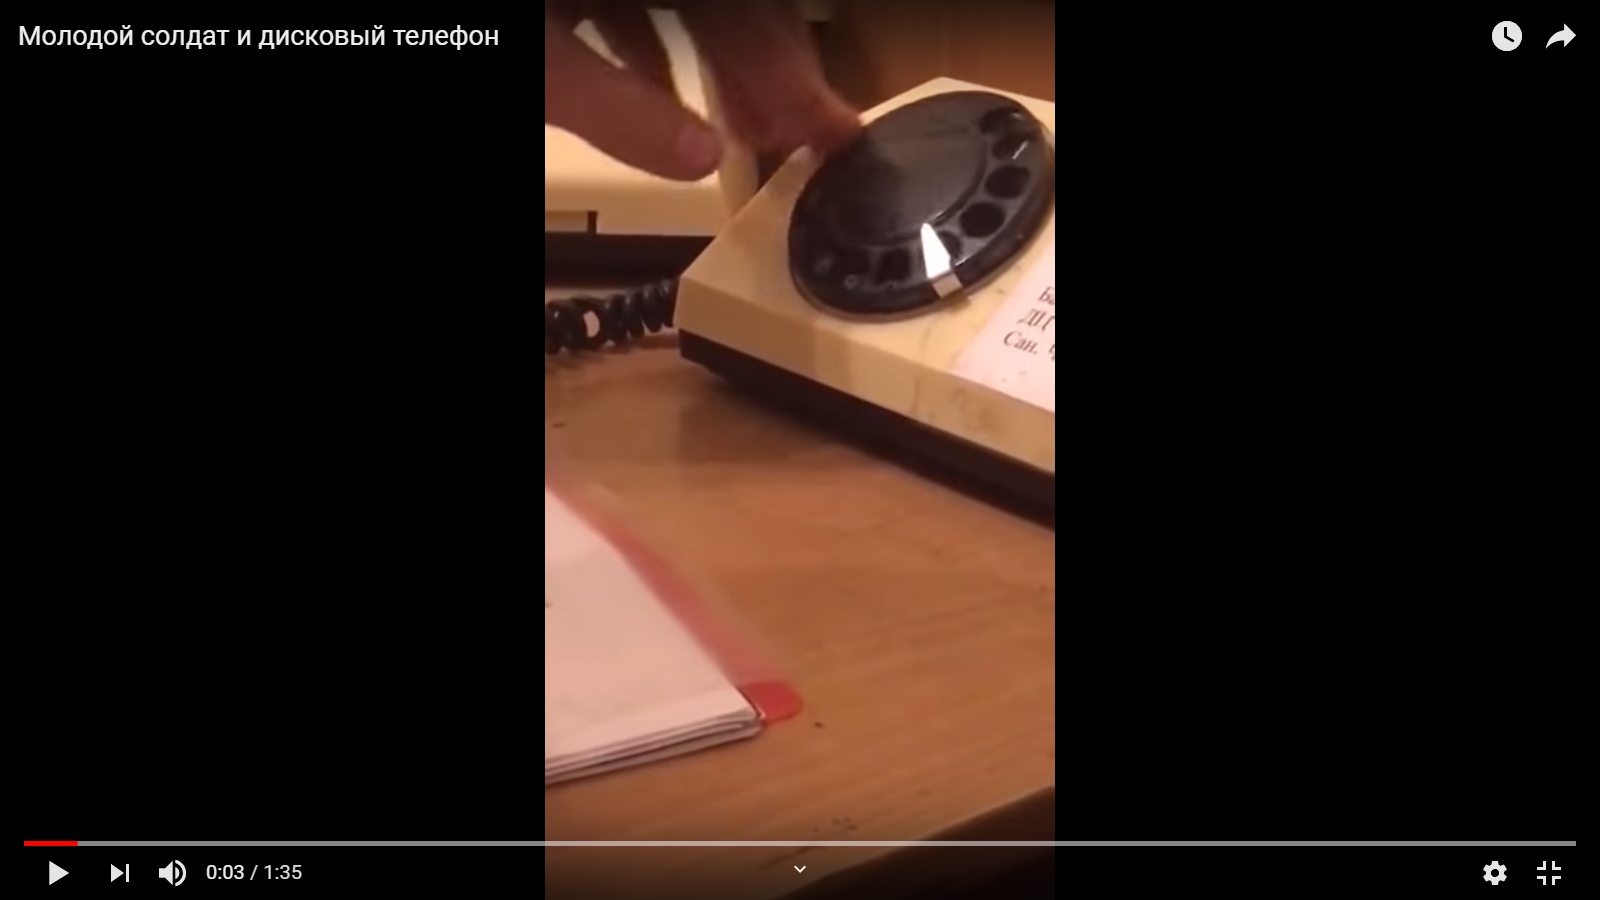 Видео дня: молодые уже не знают, что такое дисковый телефон